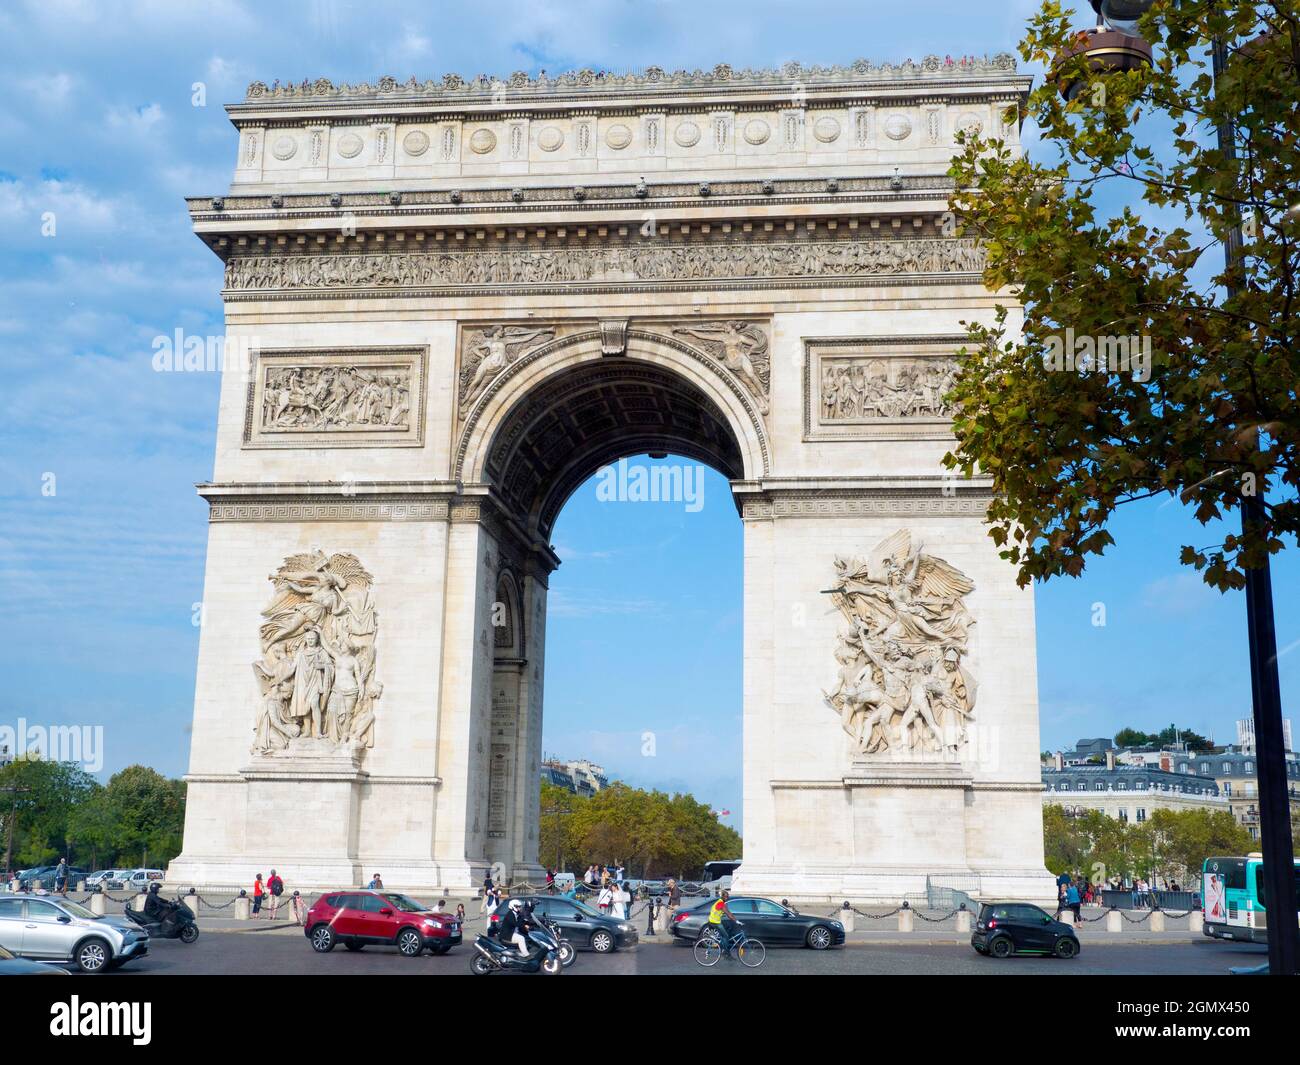 Parigi, Francia - 18 settembre 2018 il grande Arco di Trionfo de l'toile (Arco Trionfale della Stella, per dargli il suo nome completo) è uno dei più f Foto Stock